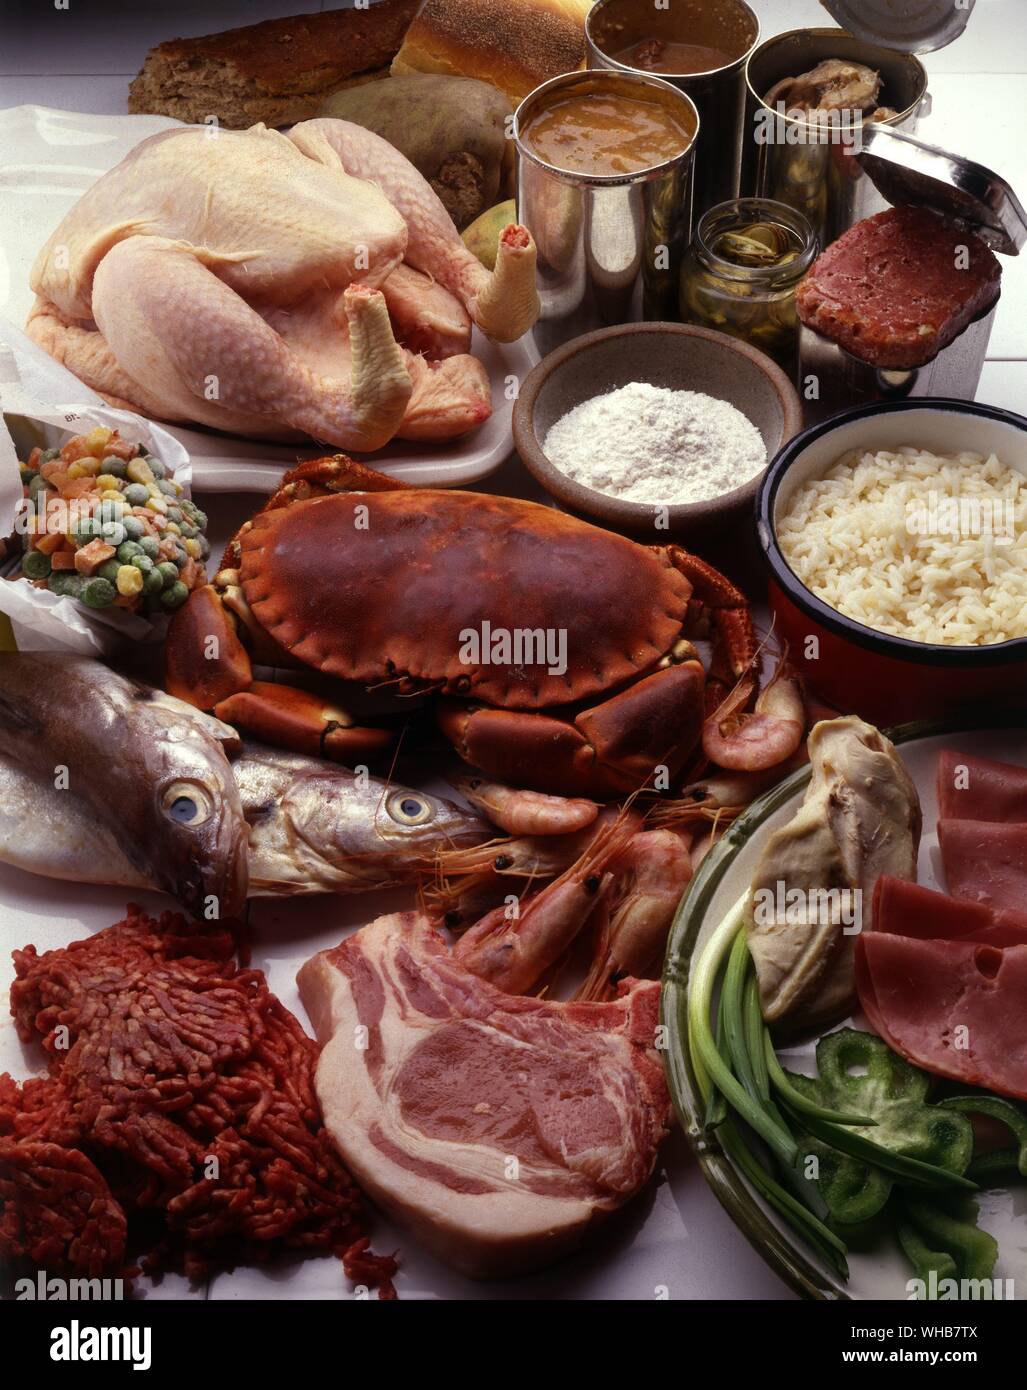 - L'alimentation des poissons poulet crabe côtelettes de porc côtelettes émincer la viande hachée de boeuf salé crevettes fish eye. Banque D'Images